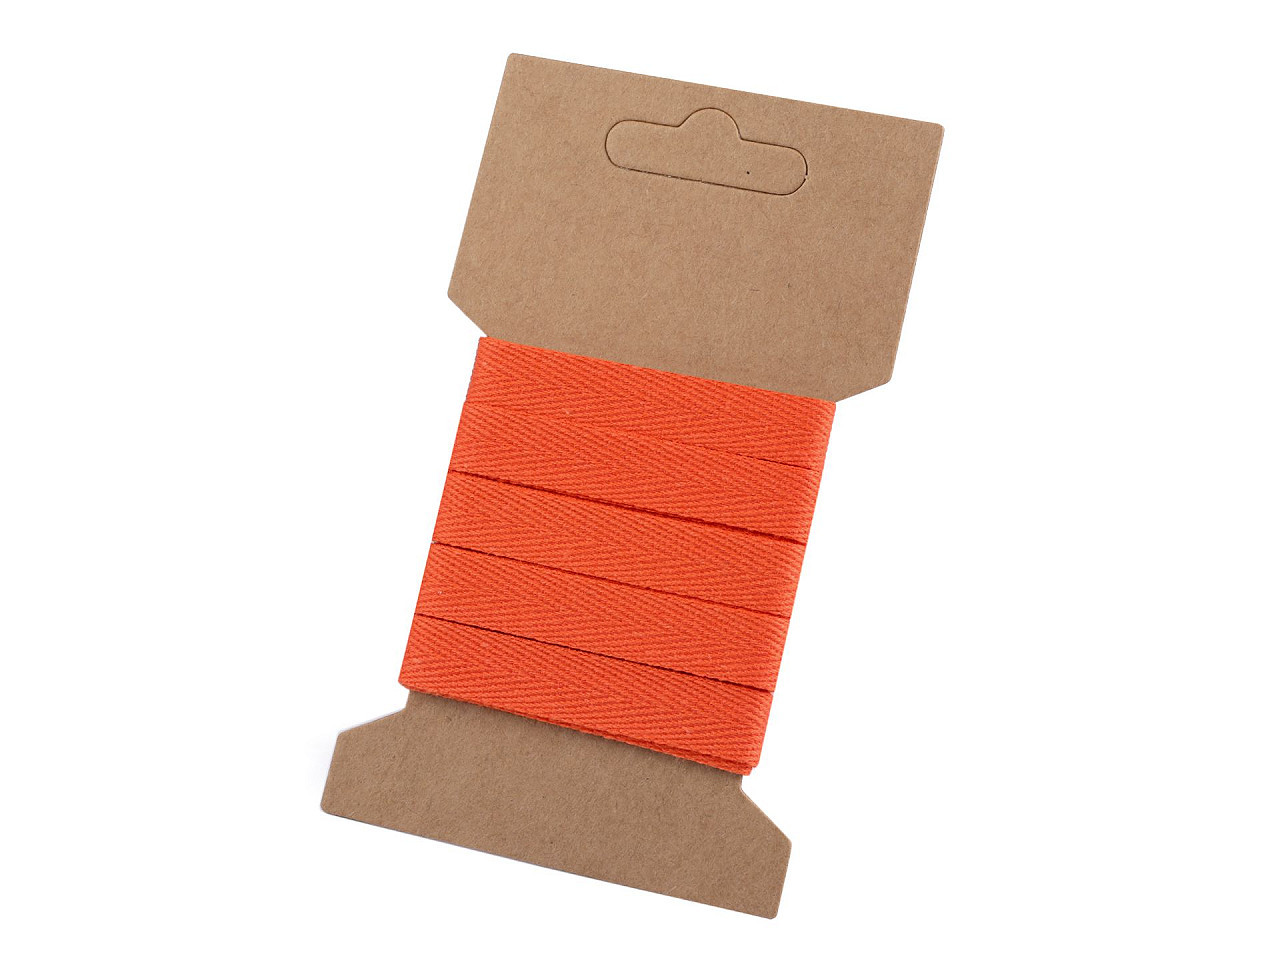 Keprovka na kartě šíře 10 mm, barva 4302 oranžová